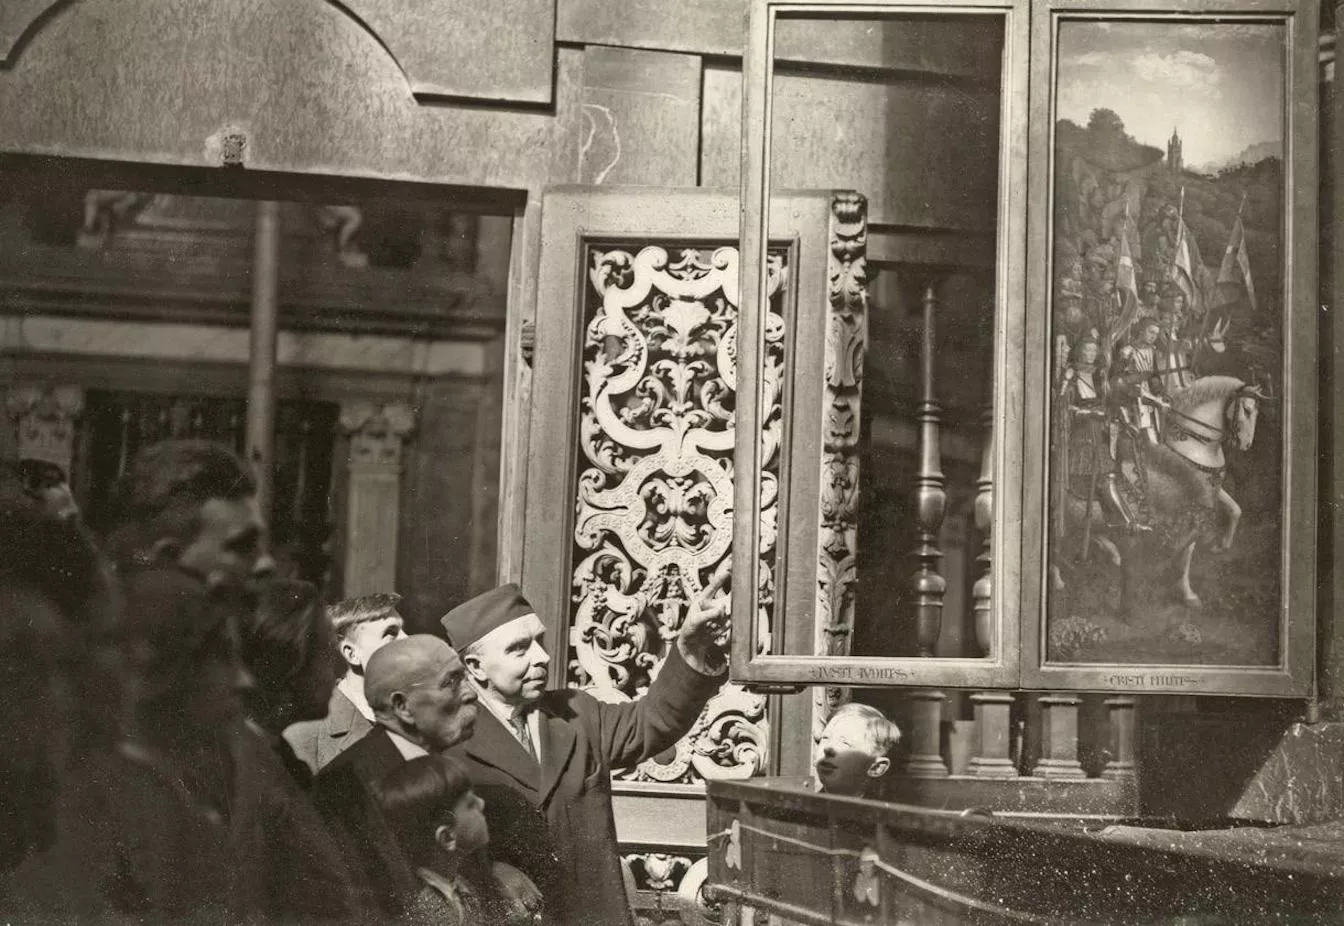 Imatge presa l'11 d’abril del 1934, el dia del robatori, en la qual es veu el públic observant el panell buit de l’esquerra